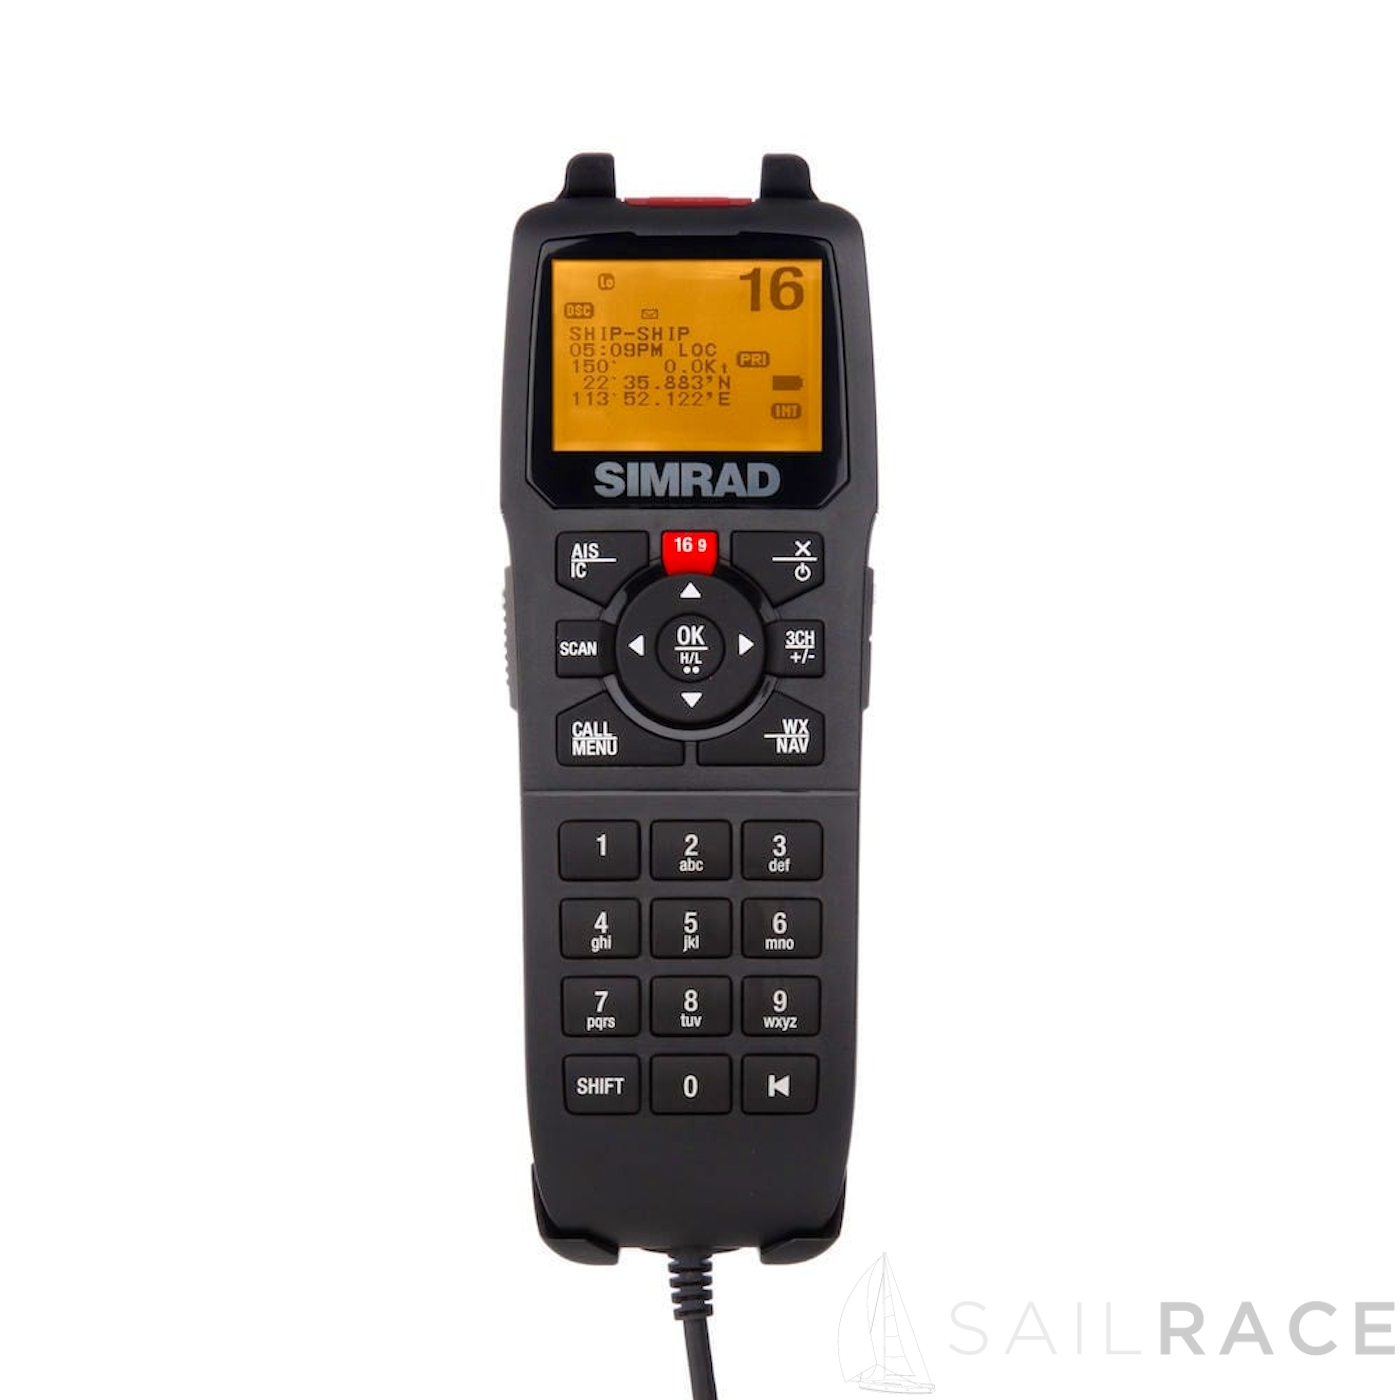 Caja negra del Simrad RS90 VHF AIS RX SYSTEM - imagen 2